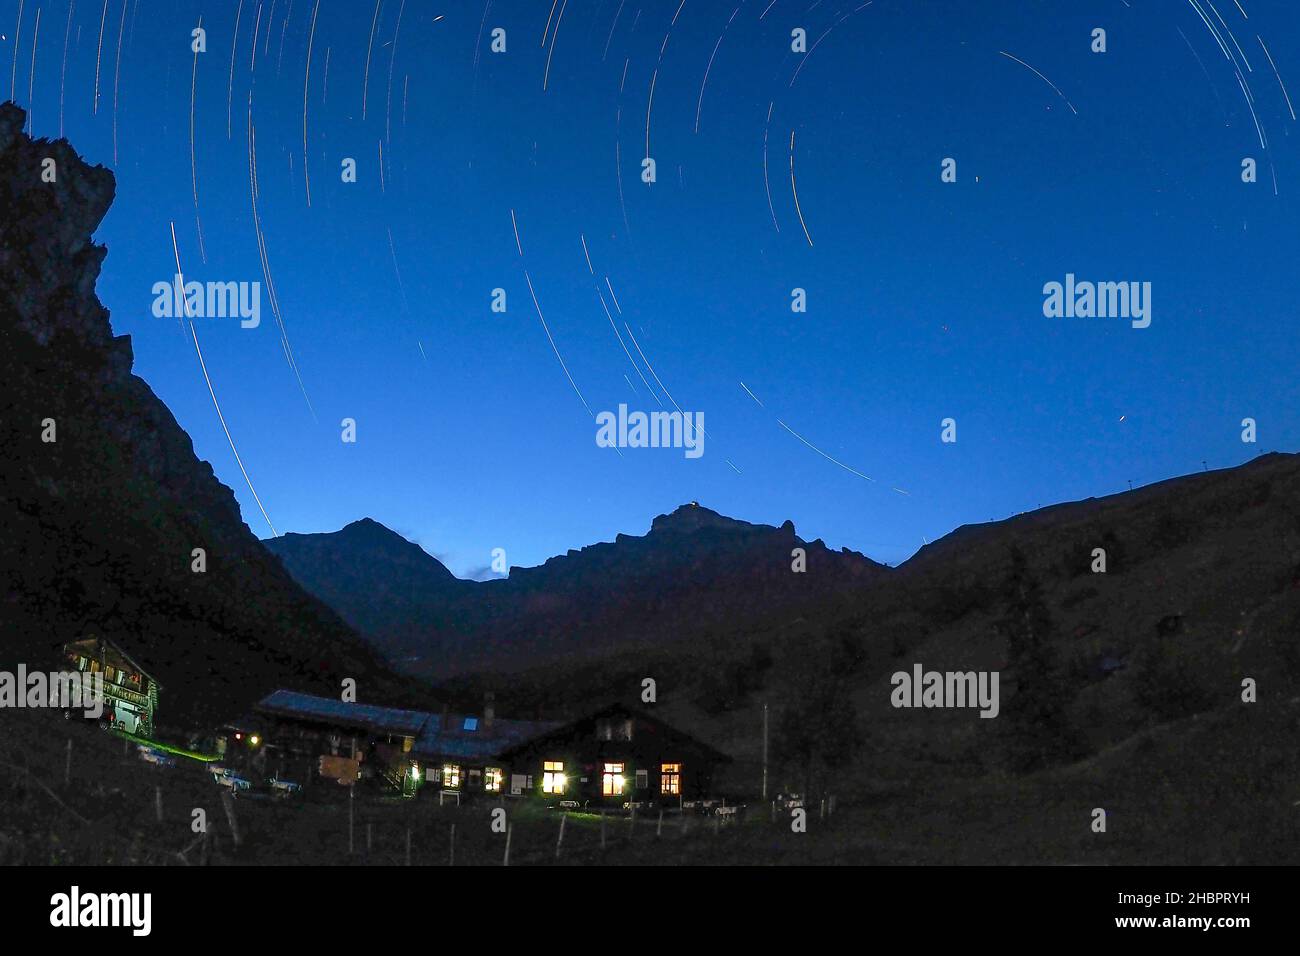 Spillbodenalp ob Mürren bei Nacht mit Sternenhimmel Stock Photo